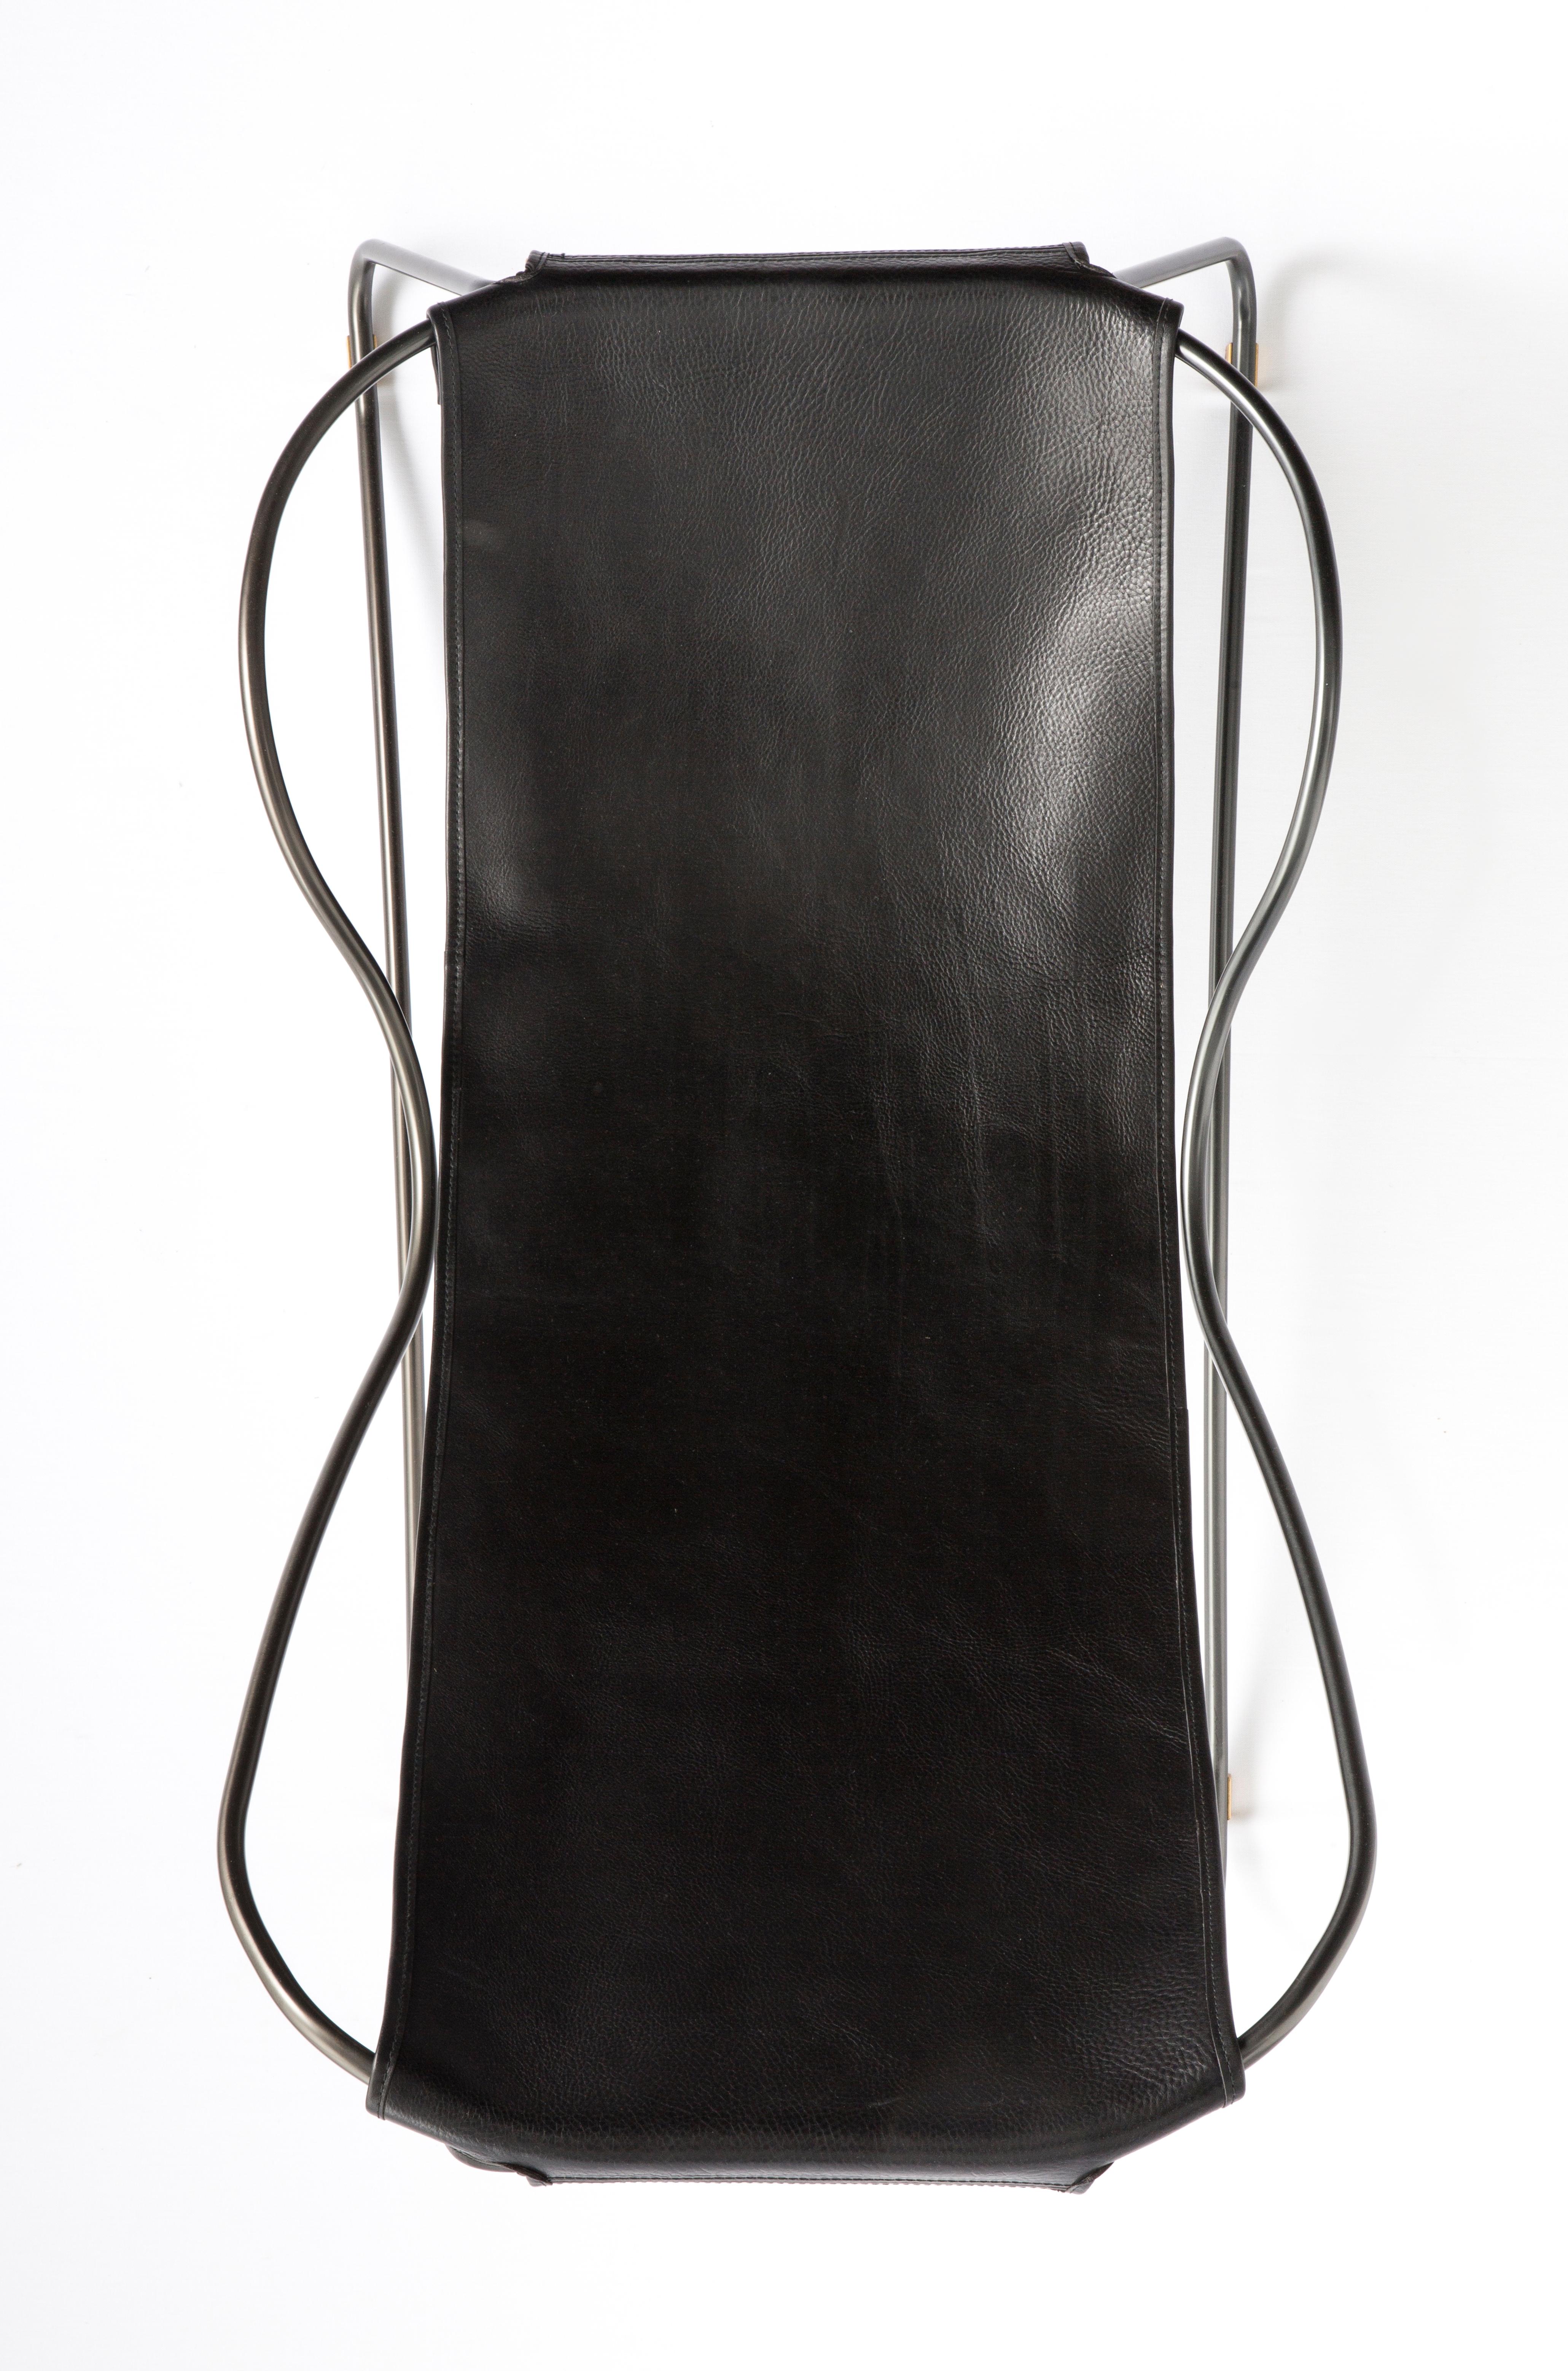 HUG Chaise Lounge Schwarzer Stahl und schwarzes Sattelleder

Die zeitgenössische Chaiselongue HUG wurde mit einer leichten Ästhetik entworfen und konzipiert. Die leichte Schwingung der 16 mm dicken Stahlstange wird durch die Flexibilität des 3,5 mm